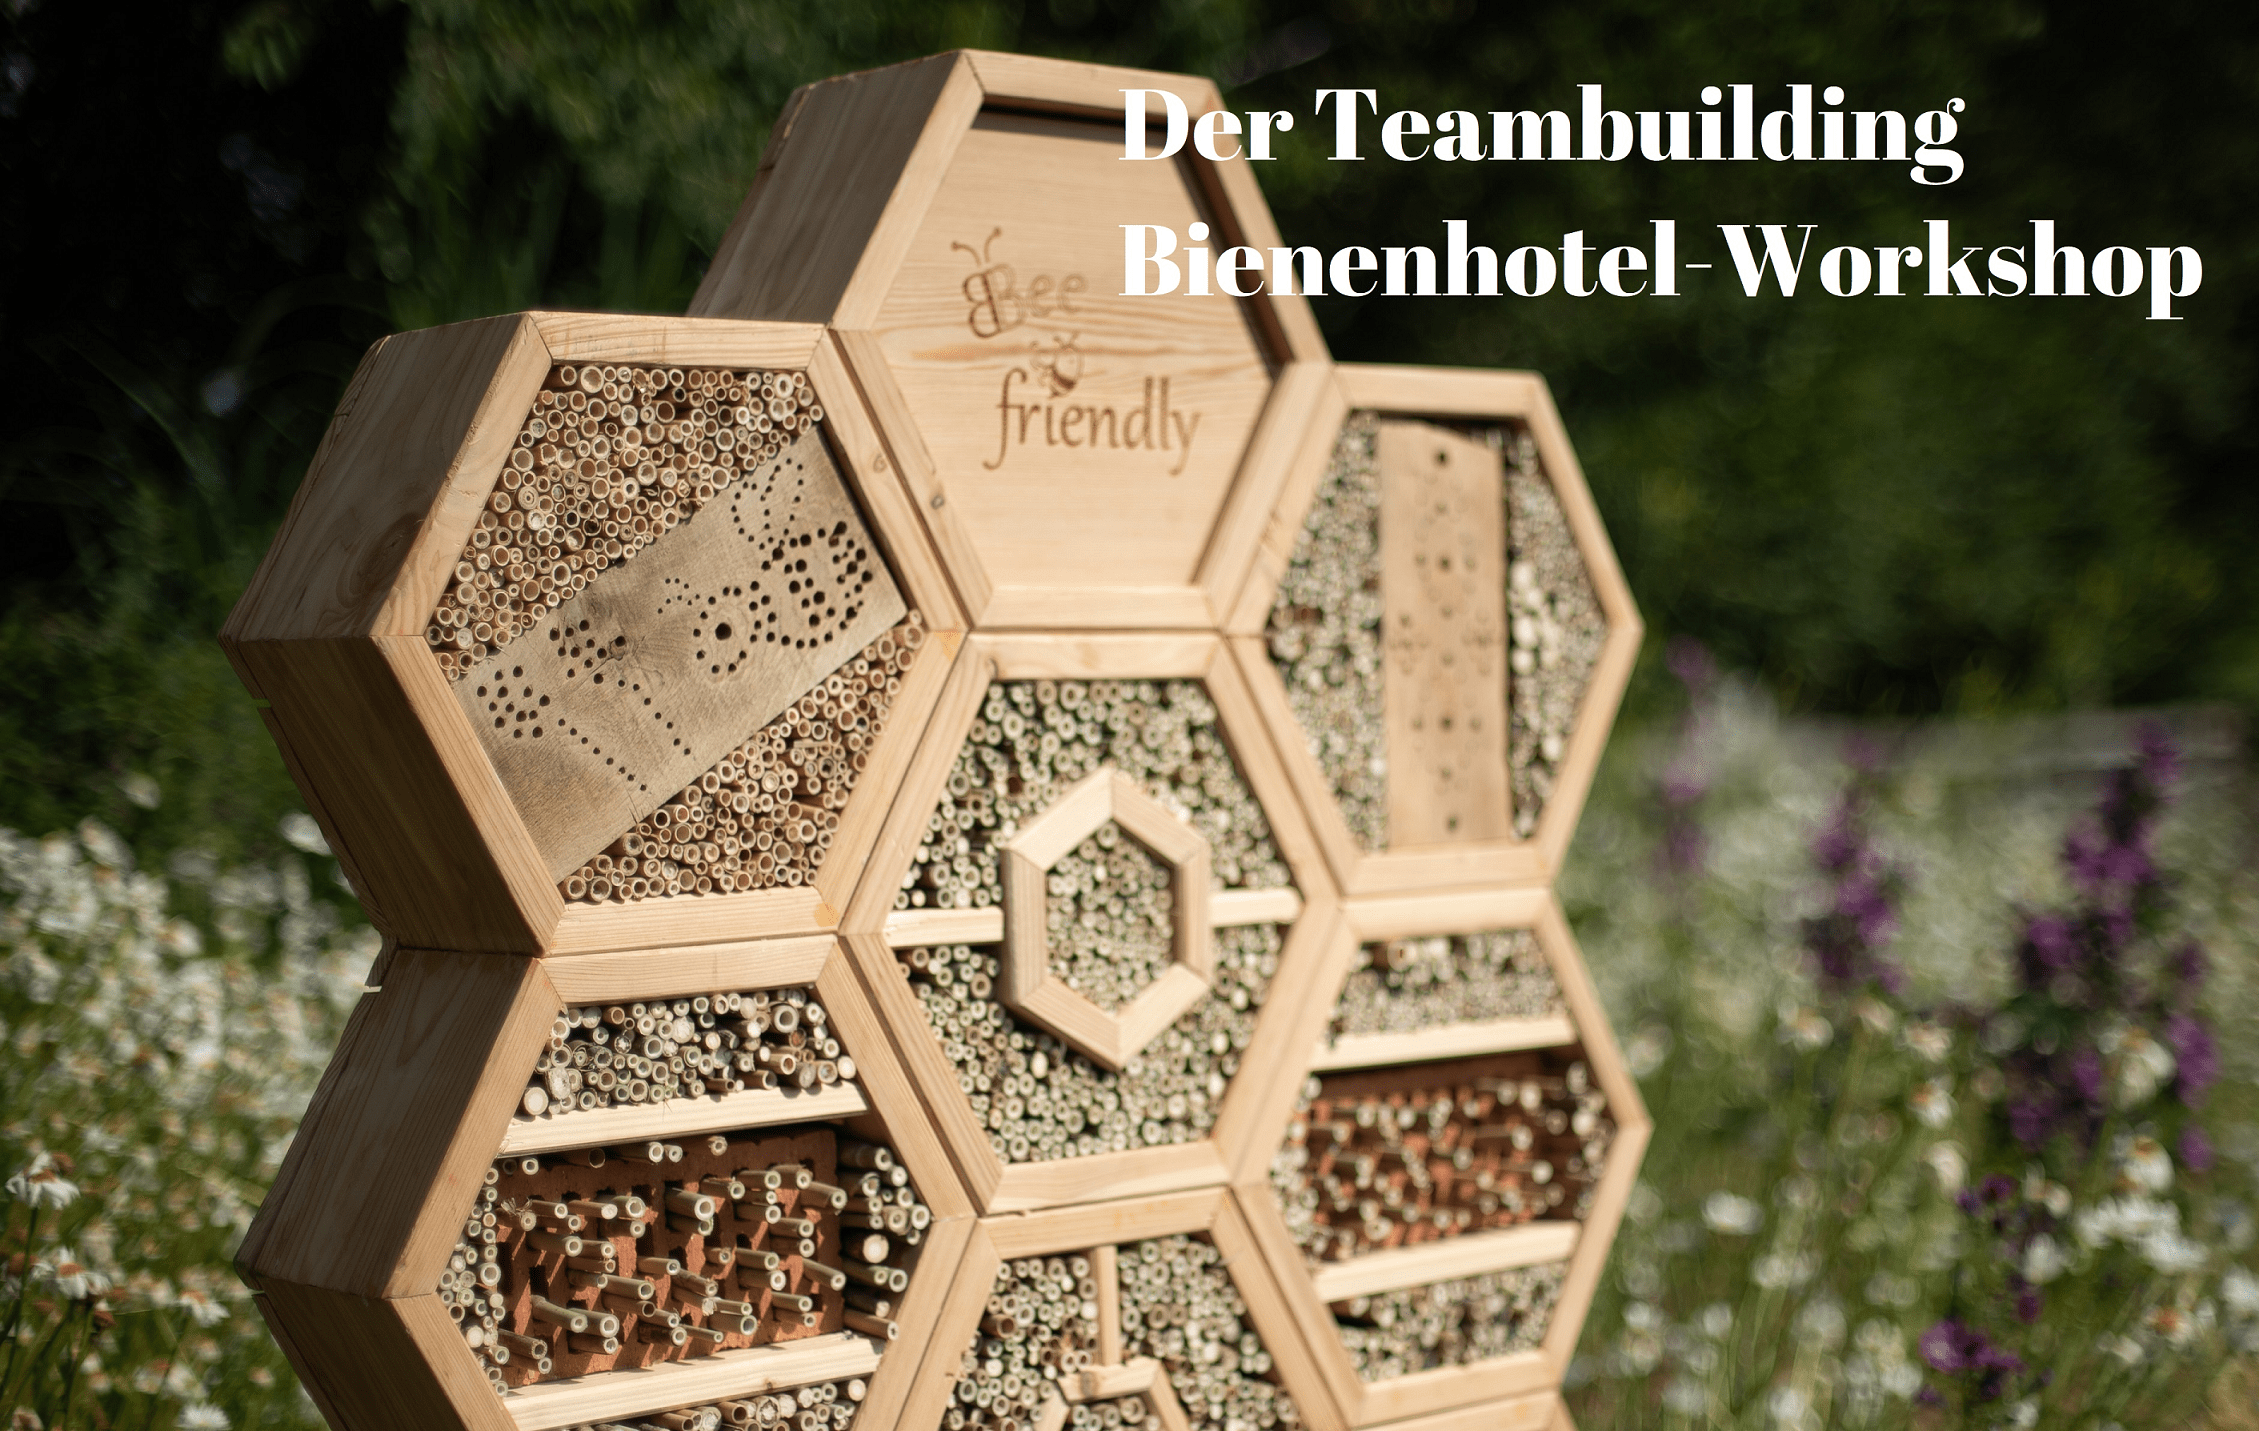 Bee friendly Teambuilding-Workshop